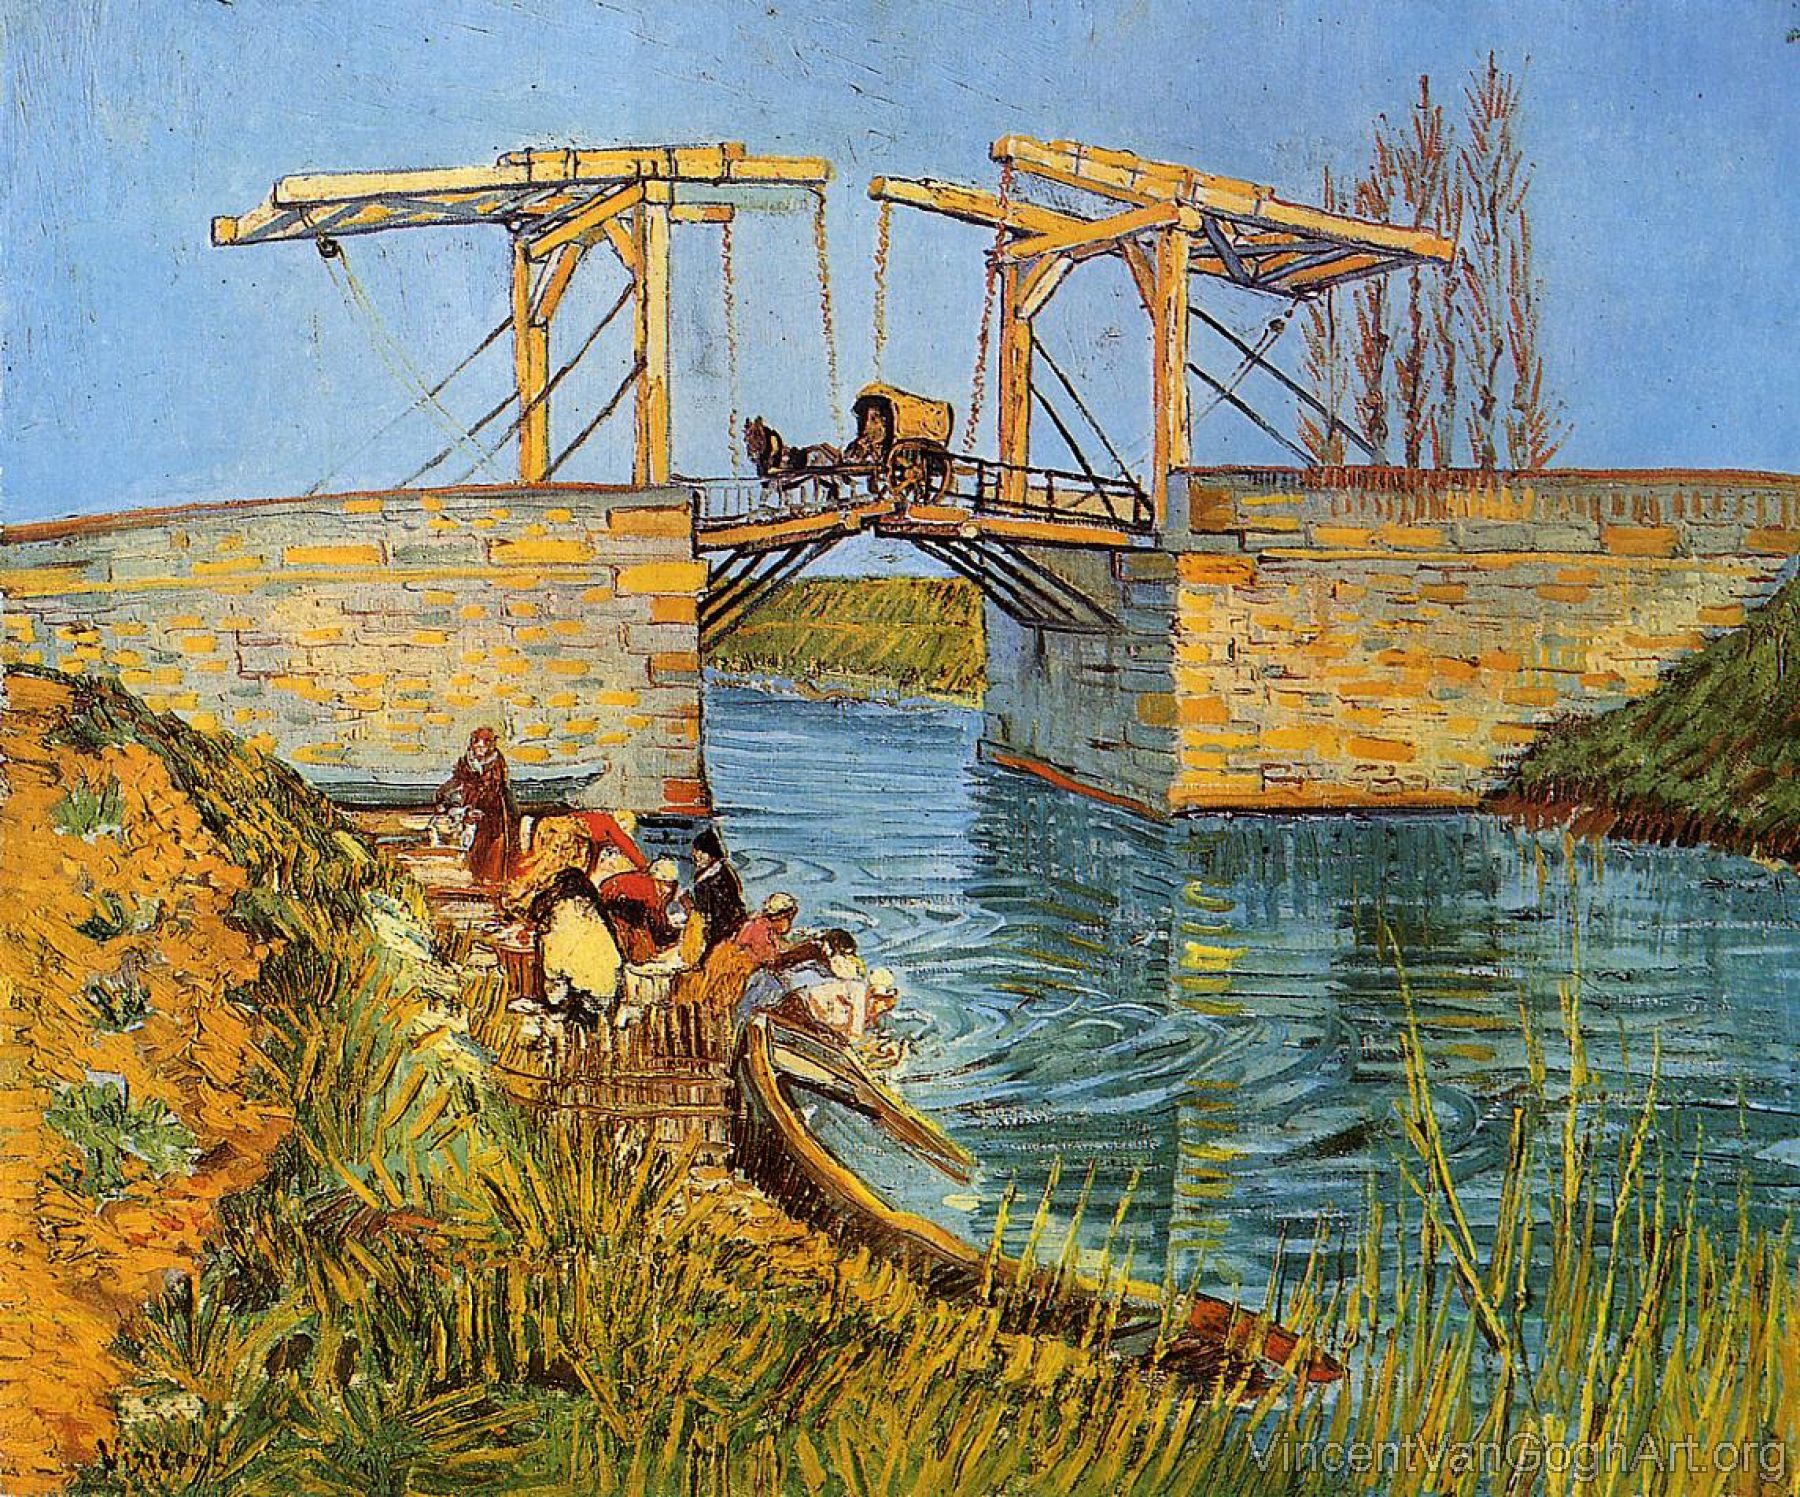 The Langlois Bridge at Arles with Women Washing